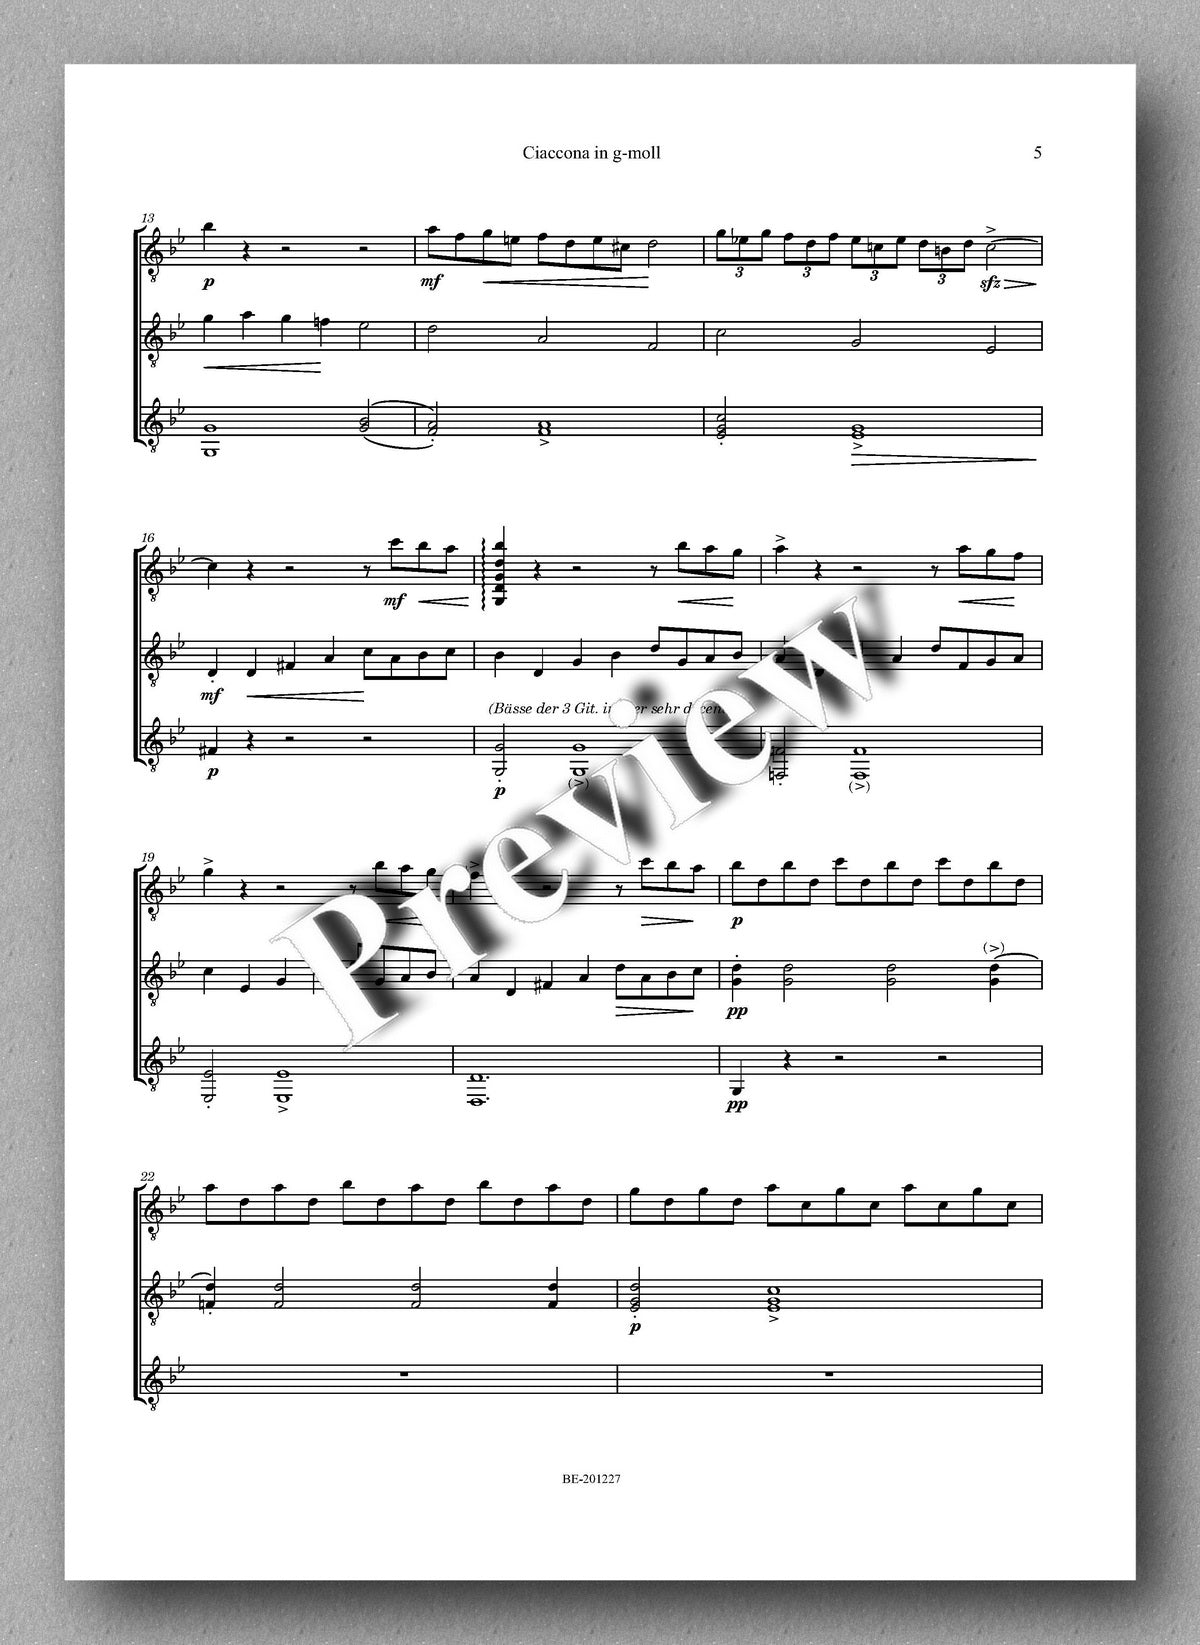 Rebay [162], Ciaccona in g-moll von Giovanni Battista Vitali music score 2